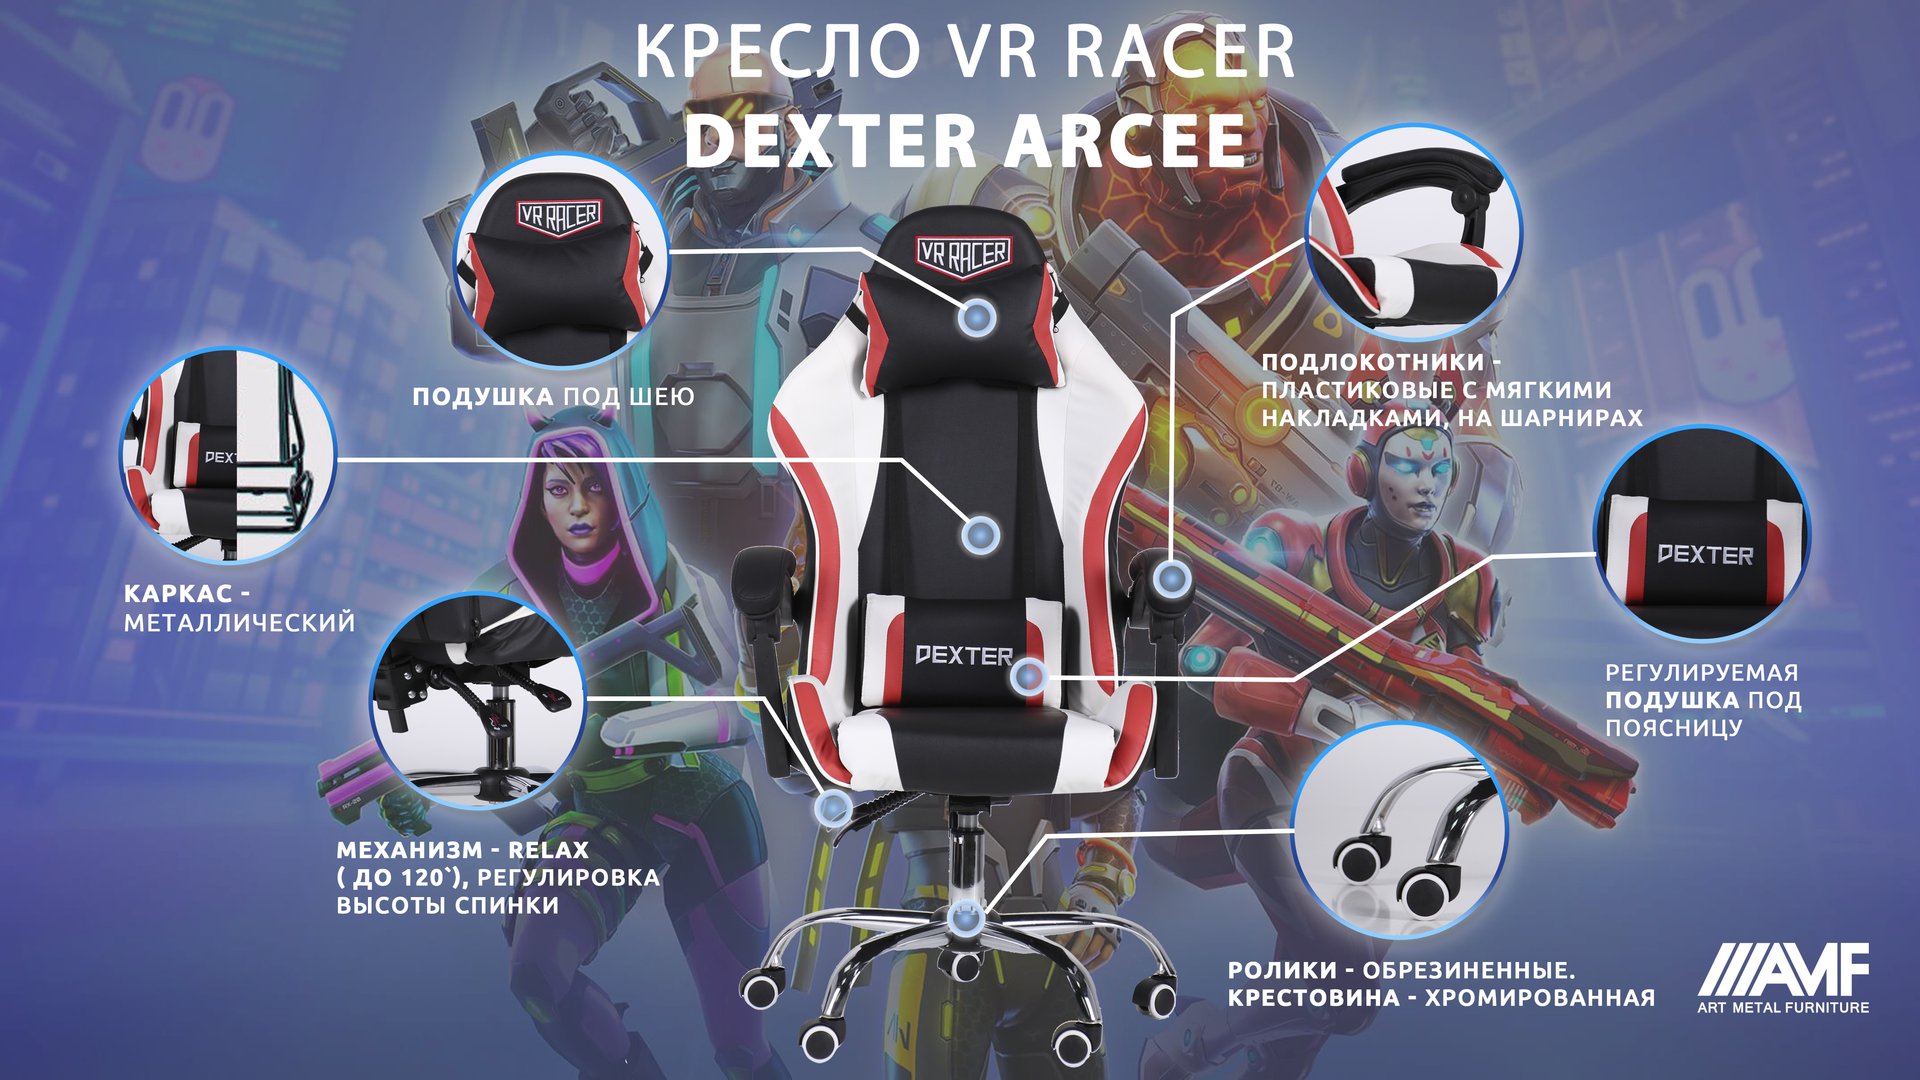 Кресло VR Racer Dexter Arcee описание